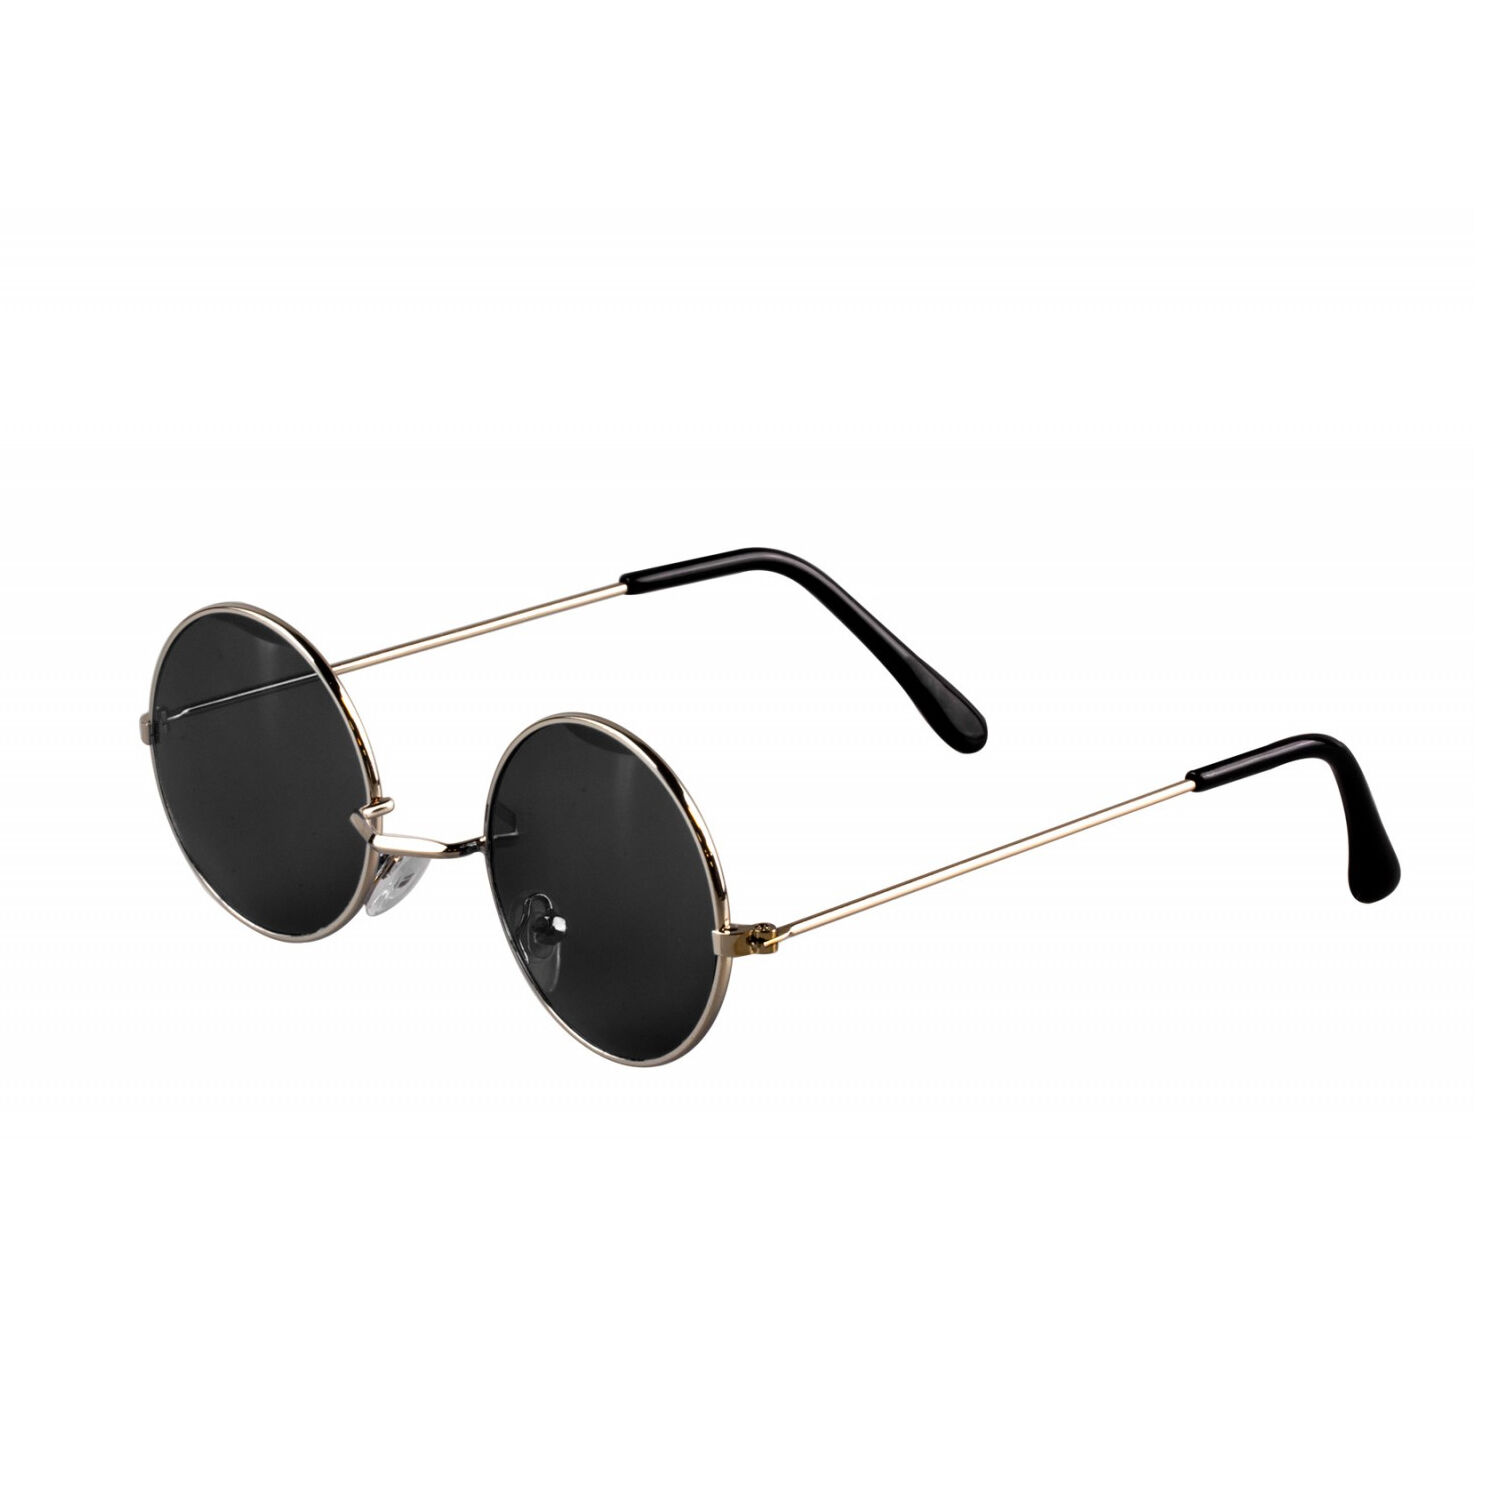 Brille Hippie, runde, schwarze Gläser aus Metall